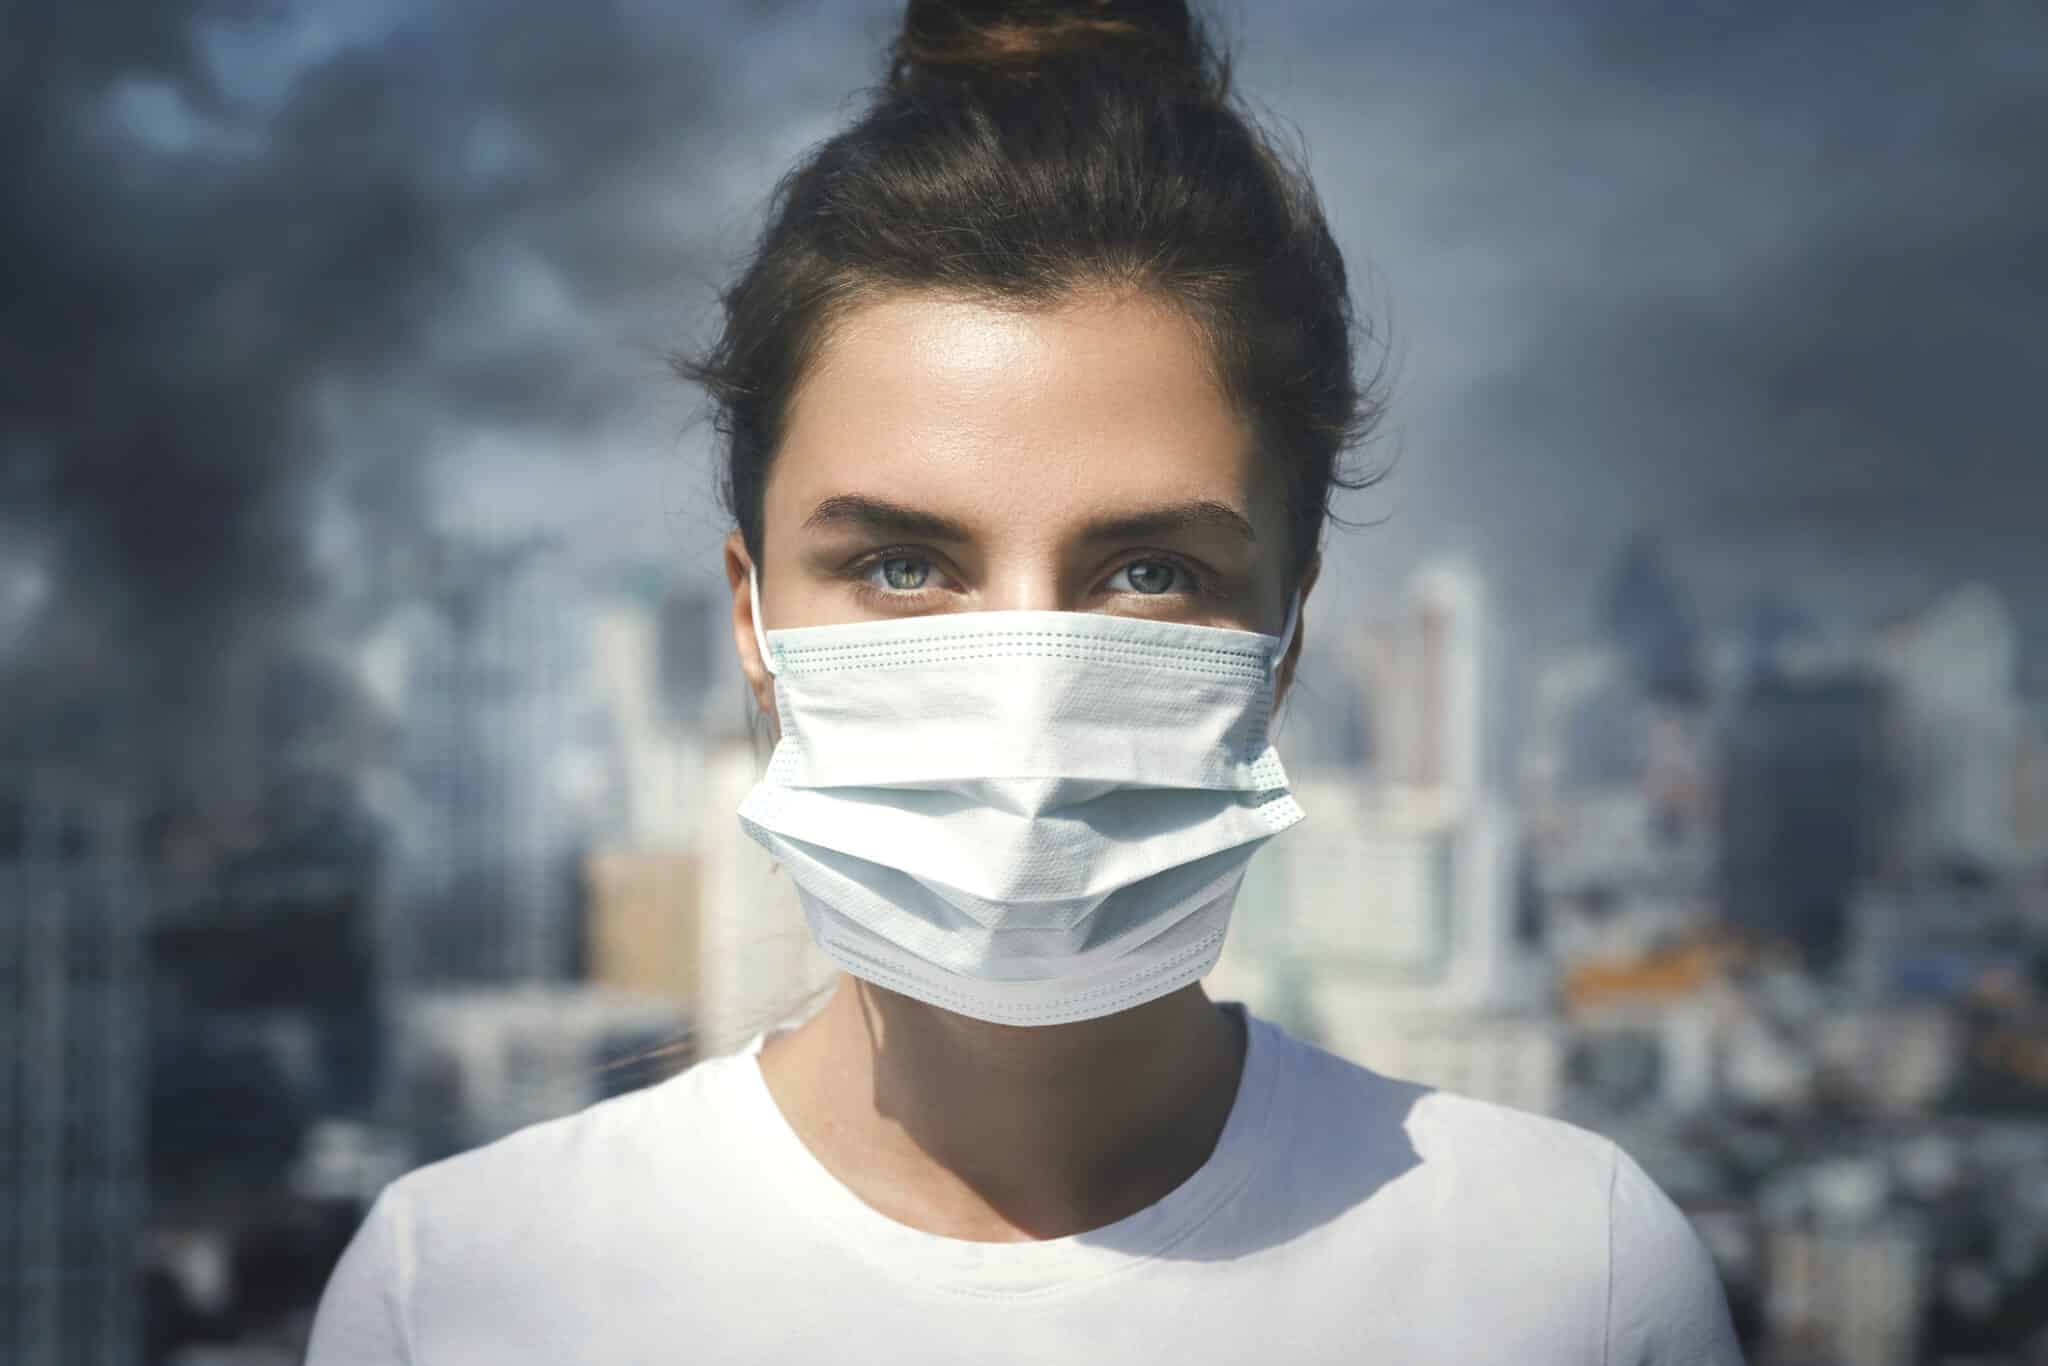 egy új kutatás összefüggést talált a légszennyezés és a mentális betegségek között